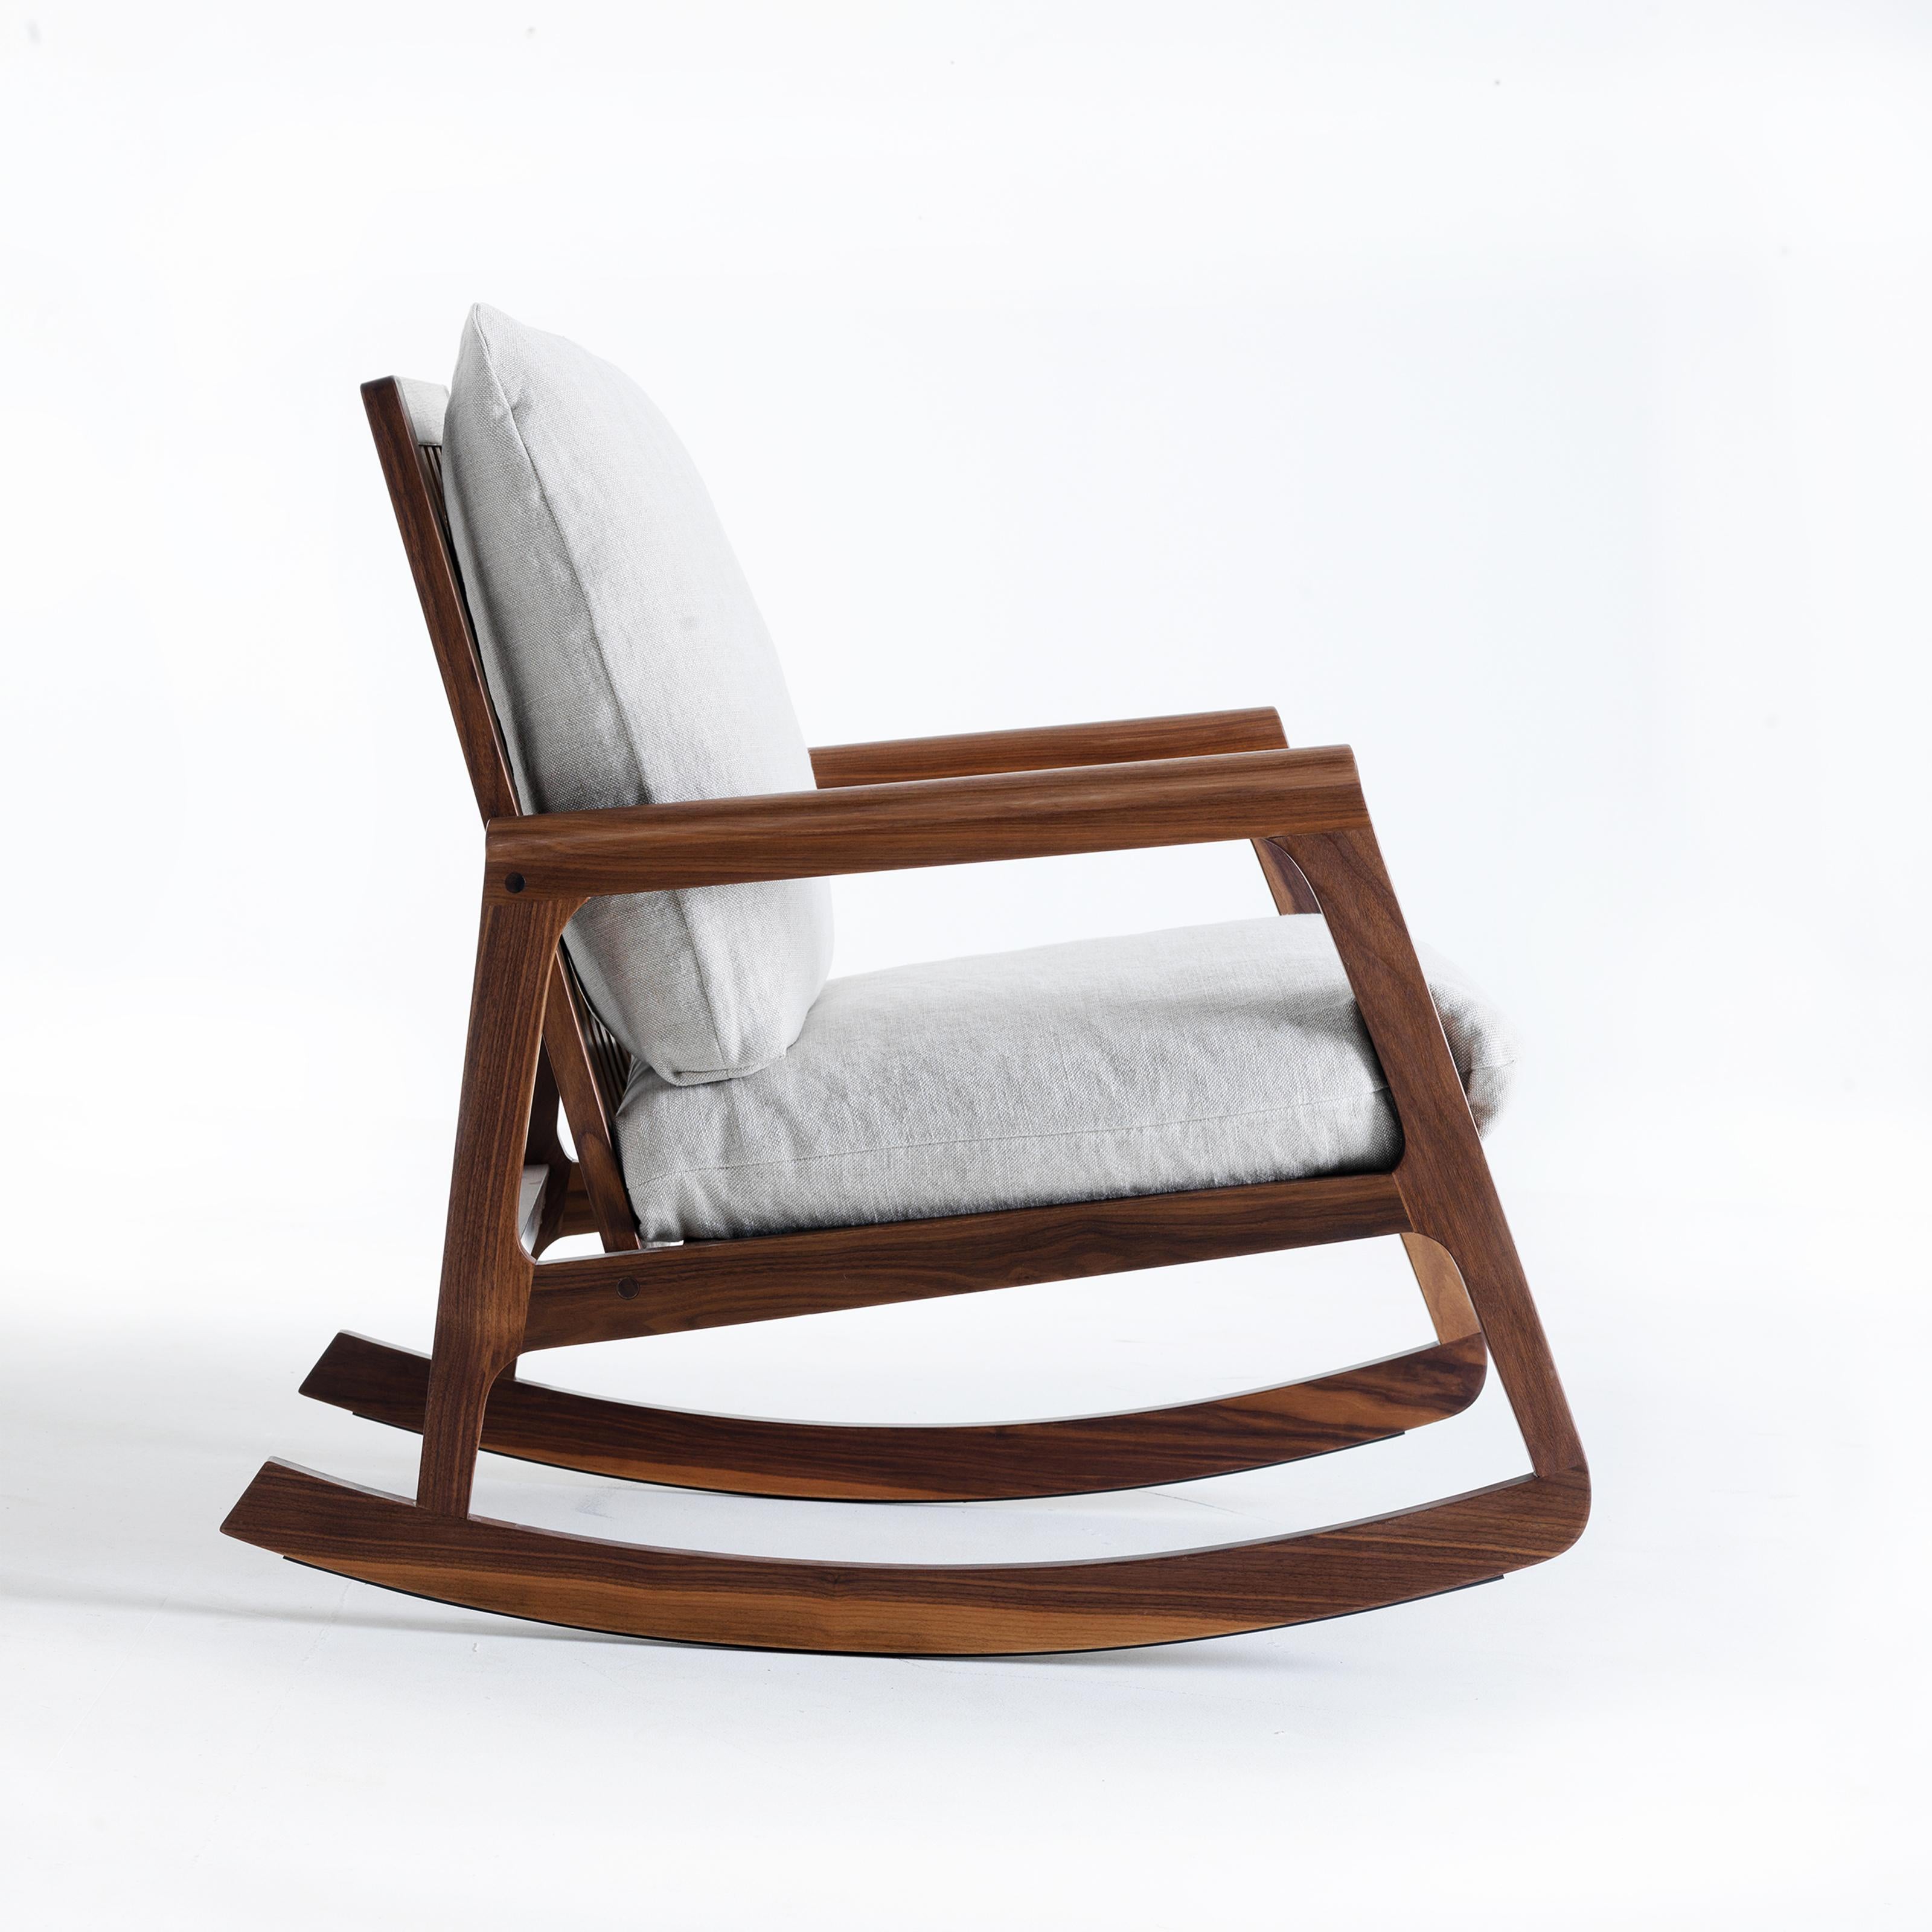 Dieser Sitz ist das Ergebnis einer Kombination aus feinem italienischen Design und hervorragender Handwerkskunst.
Made in Italy mit Leidenschaft von erfahrenen Händen, die Struktur ist es in Premium-massiven Nussbaum, Öl-Finish.
Der Stuhl ist mit